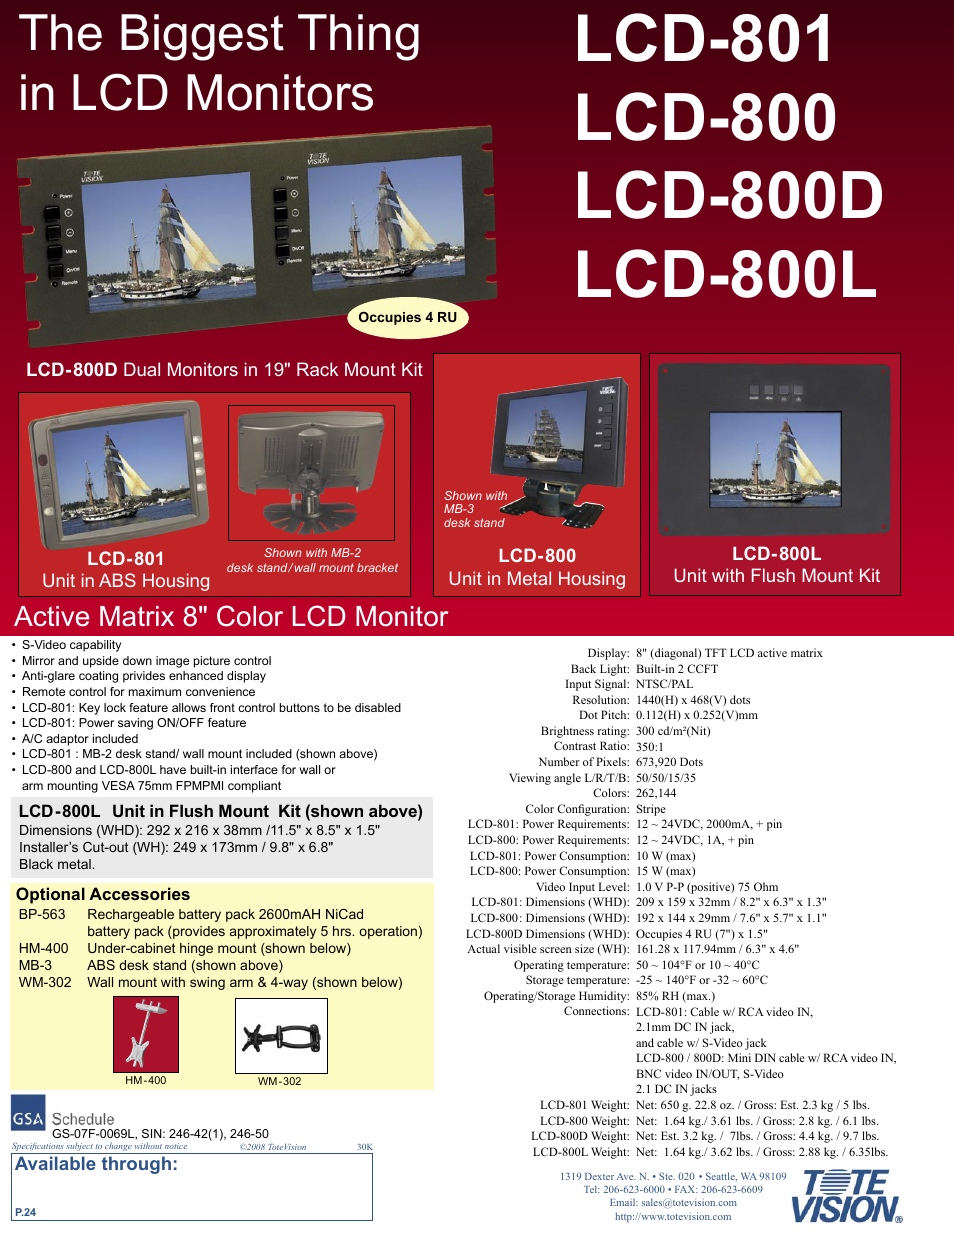 LCD-800